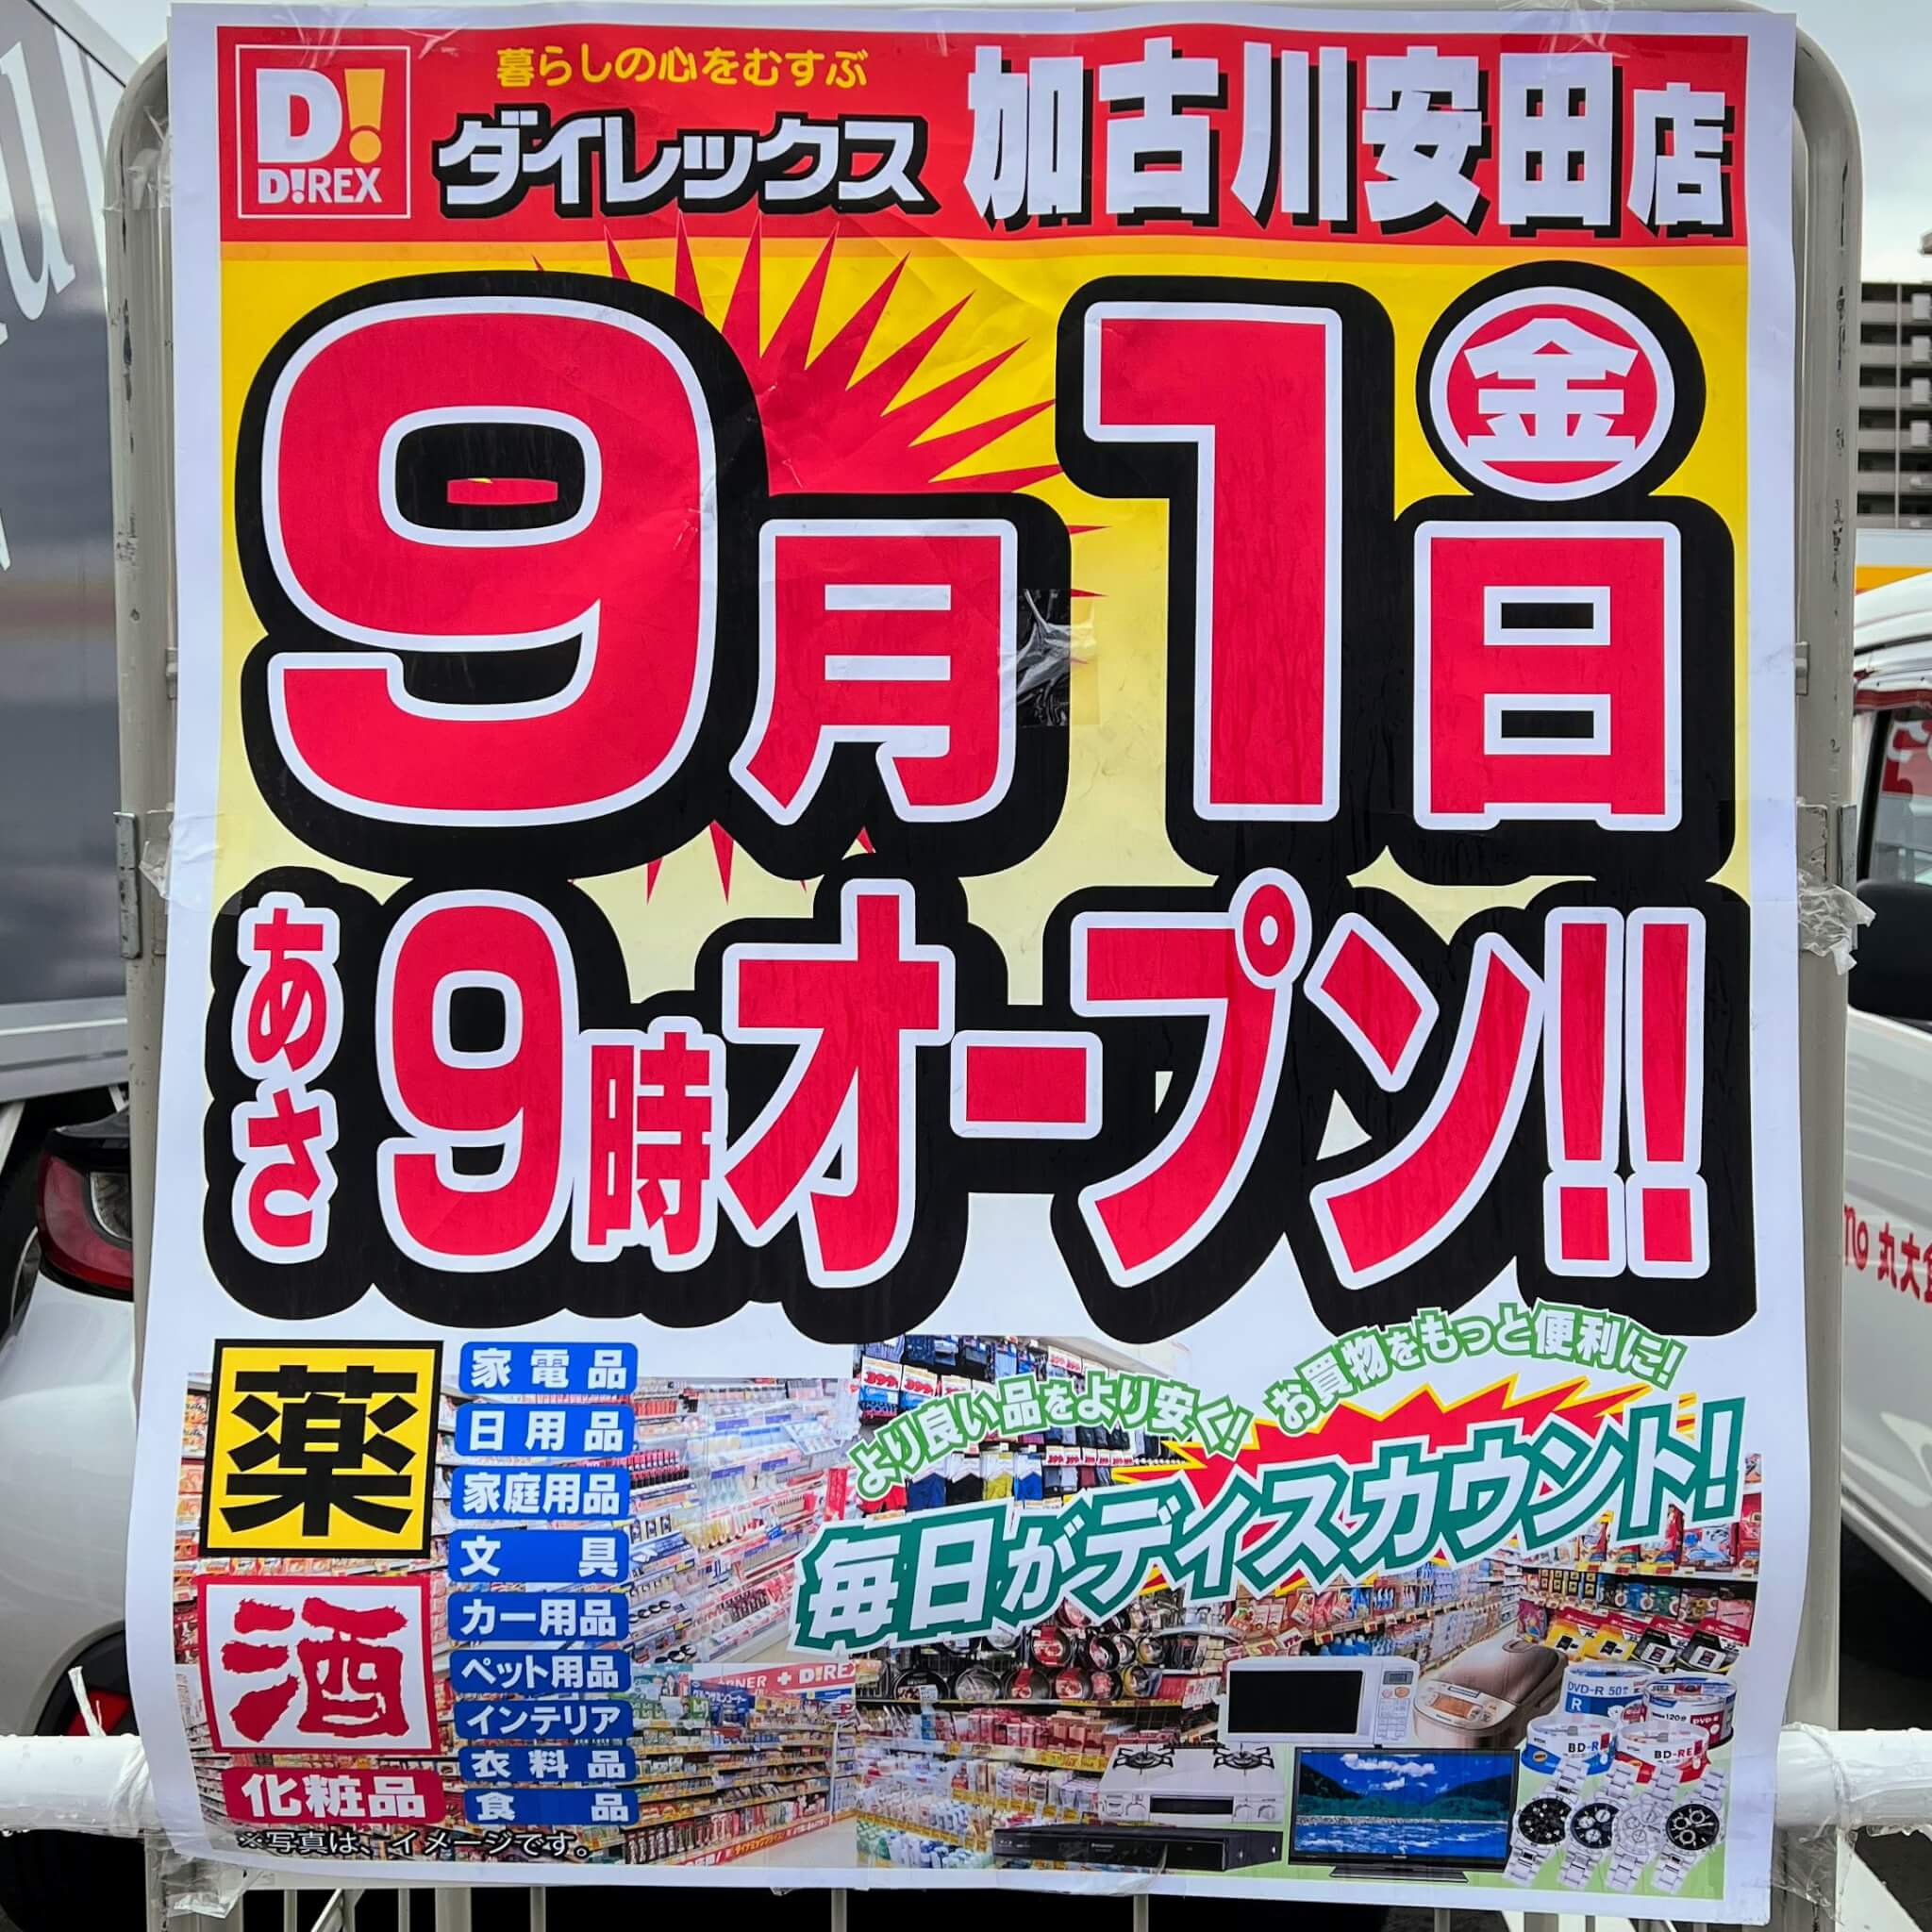 ダイレックス加古川安田店9/1あさ9時オープンのお知らせ